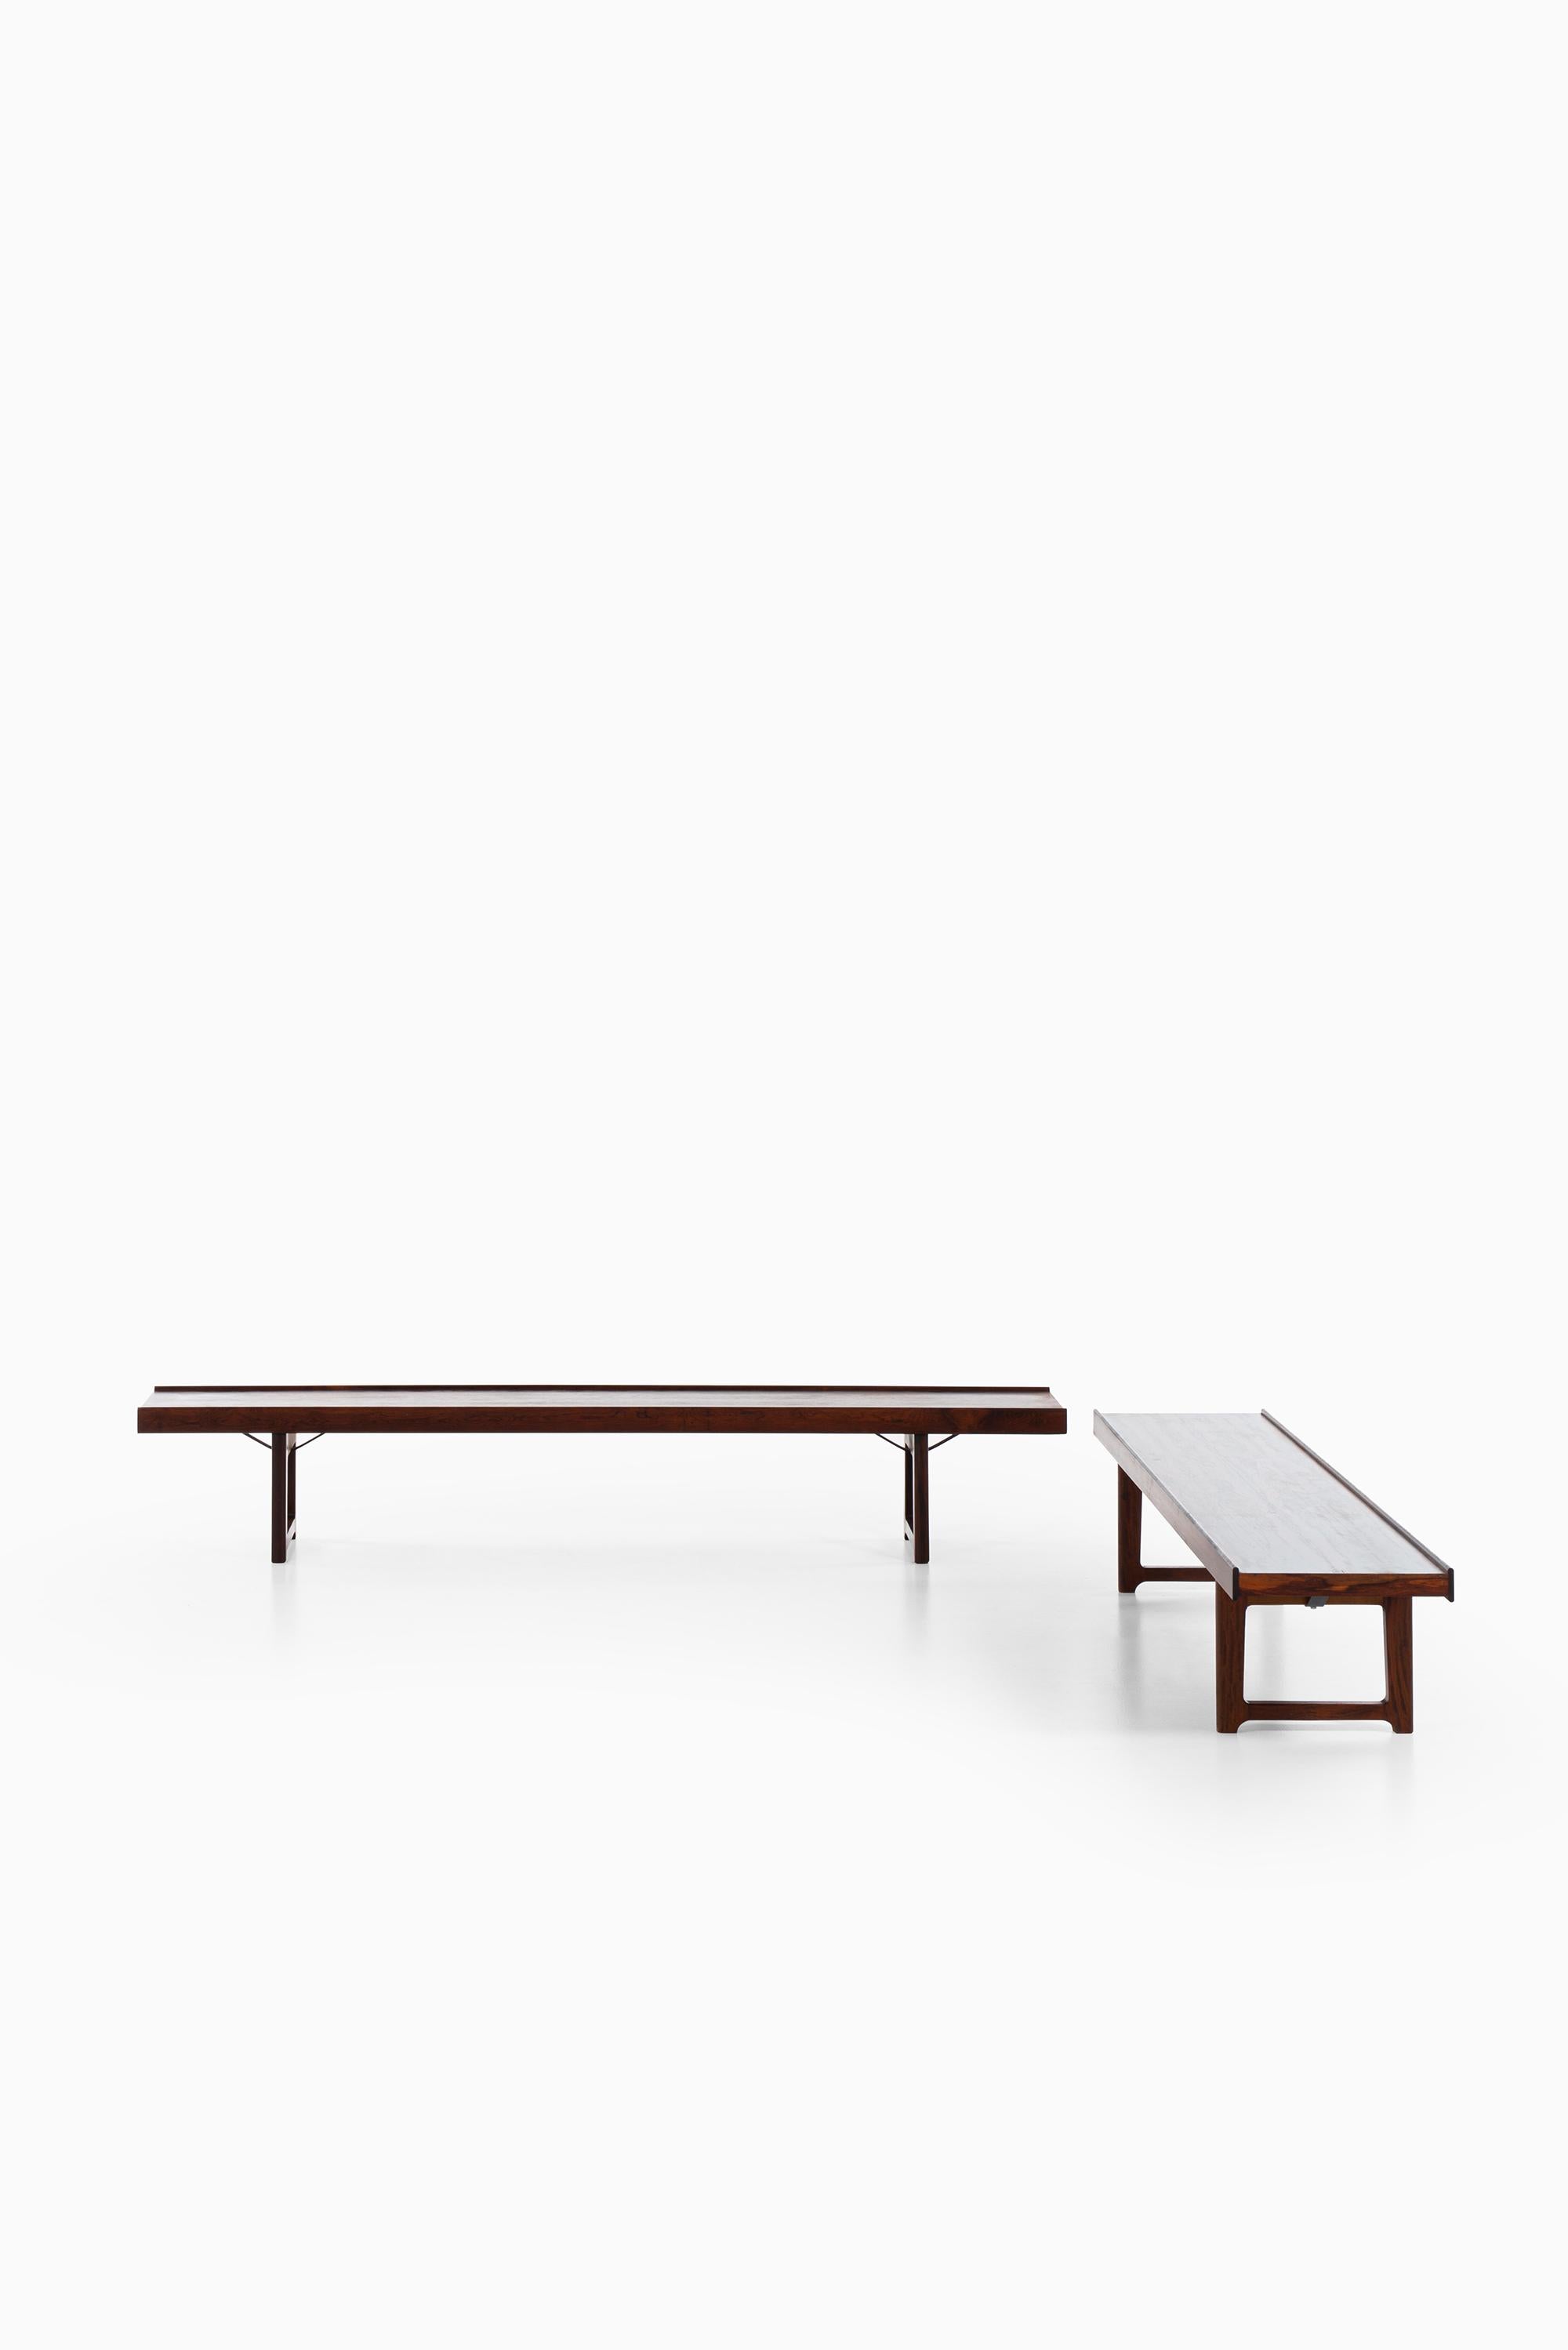 Bench / side table model Krobo designed by Torbjørn Afdal. Produced by Mellemstrands Møbelfabrik in Norway.